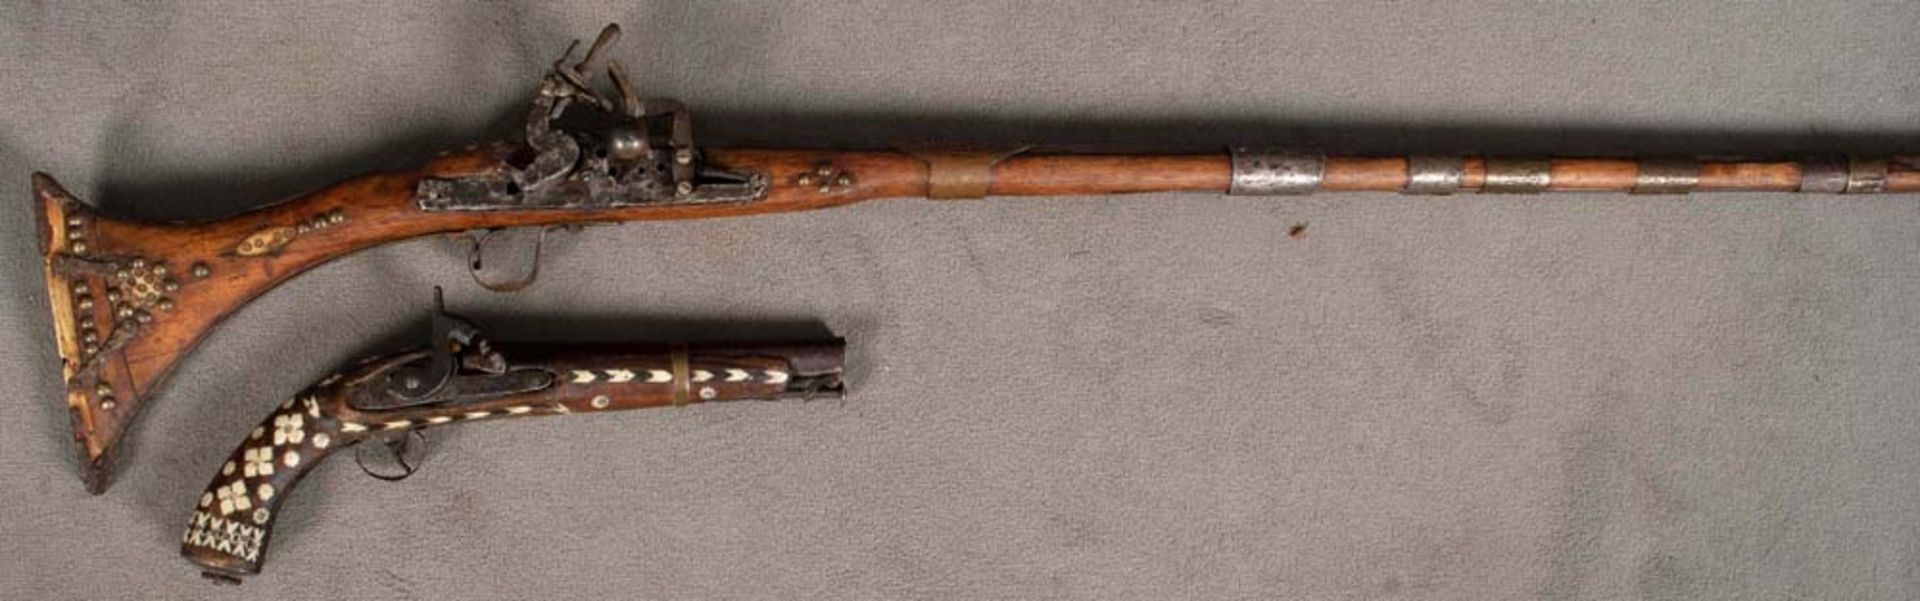 Steinschlossgewehr, Gesamtlänge 151 cm, Lauf=118 cm. Perkussionspistole, Gesamtlänge 40 cm, Lauf=